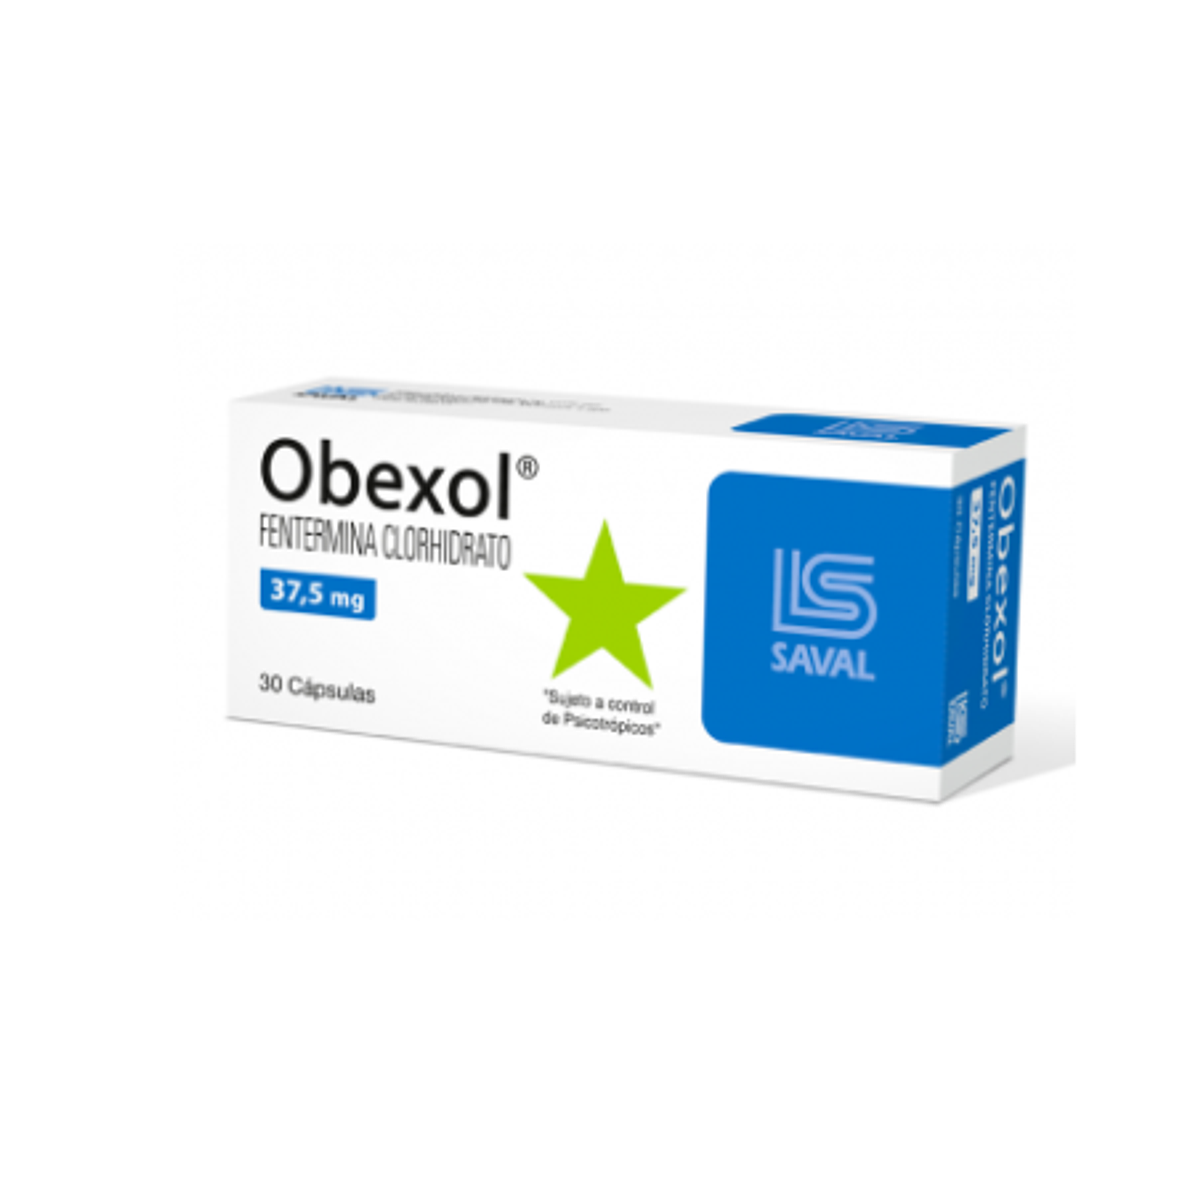 Obexol 37,5 mg 30 comprimidos